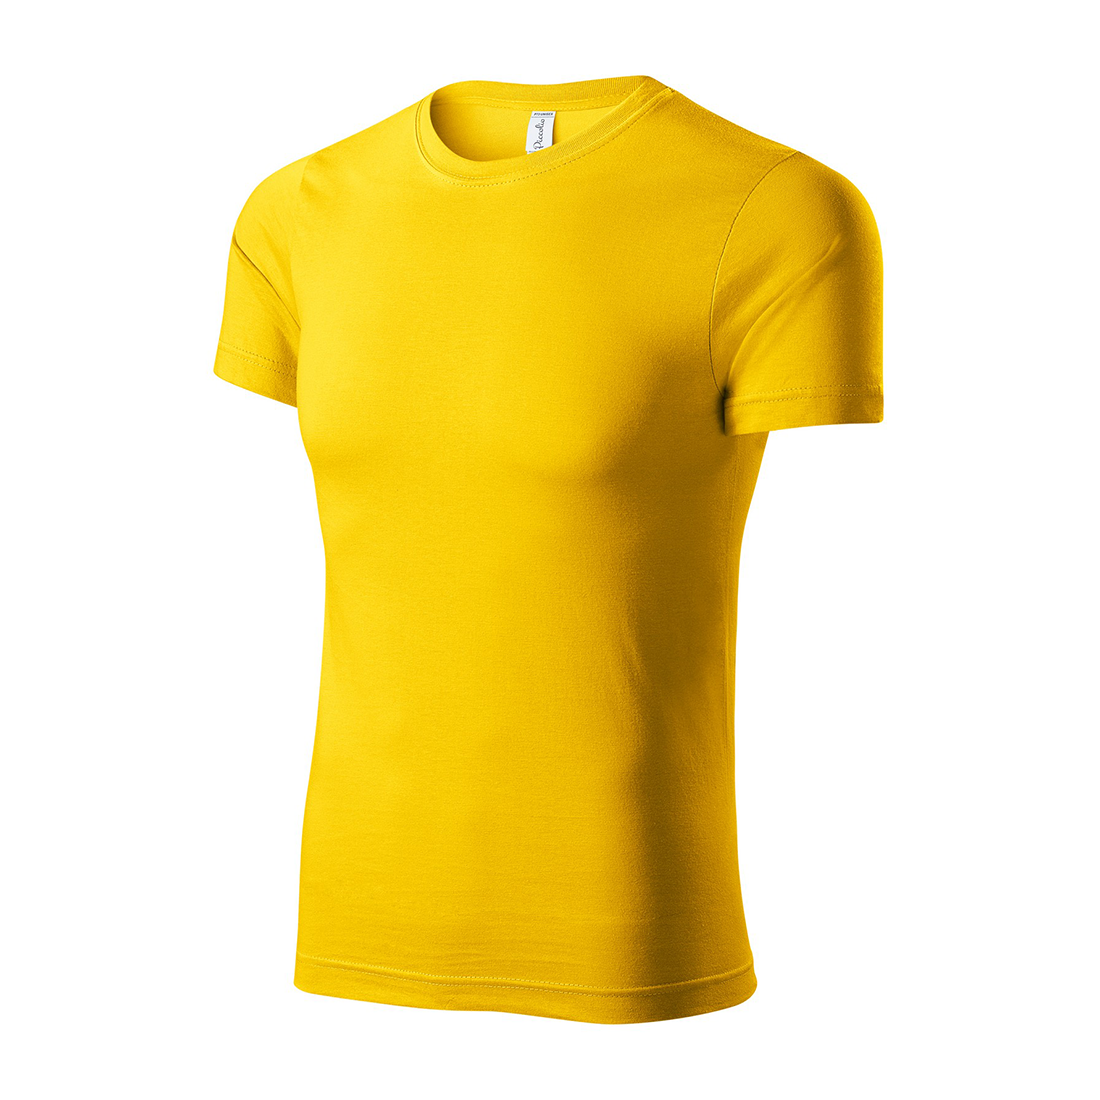 Unisex-T-Shirt aus 100 % Baumwolle - Arbeitskleidung